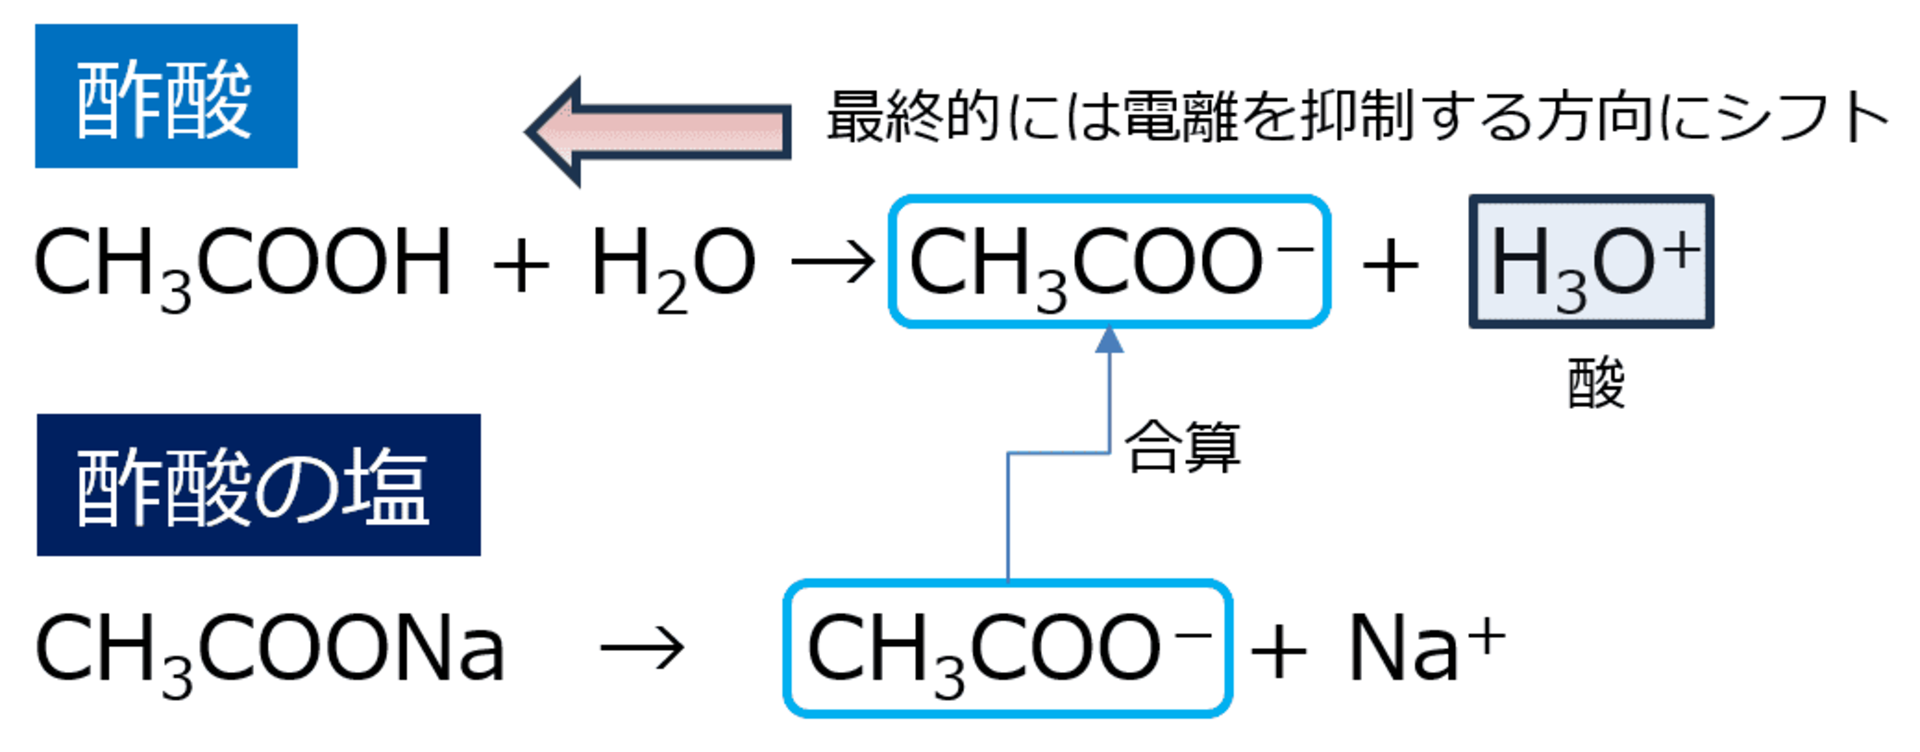 弱酸とその弱酸のイオン形態をもつ塩を混合した溶液において、pHの変動がゆるやかになる作用。 弱アルカリ性の物質でも同様の機構が働く。